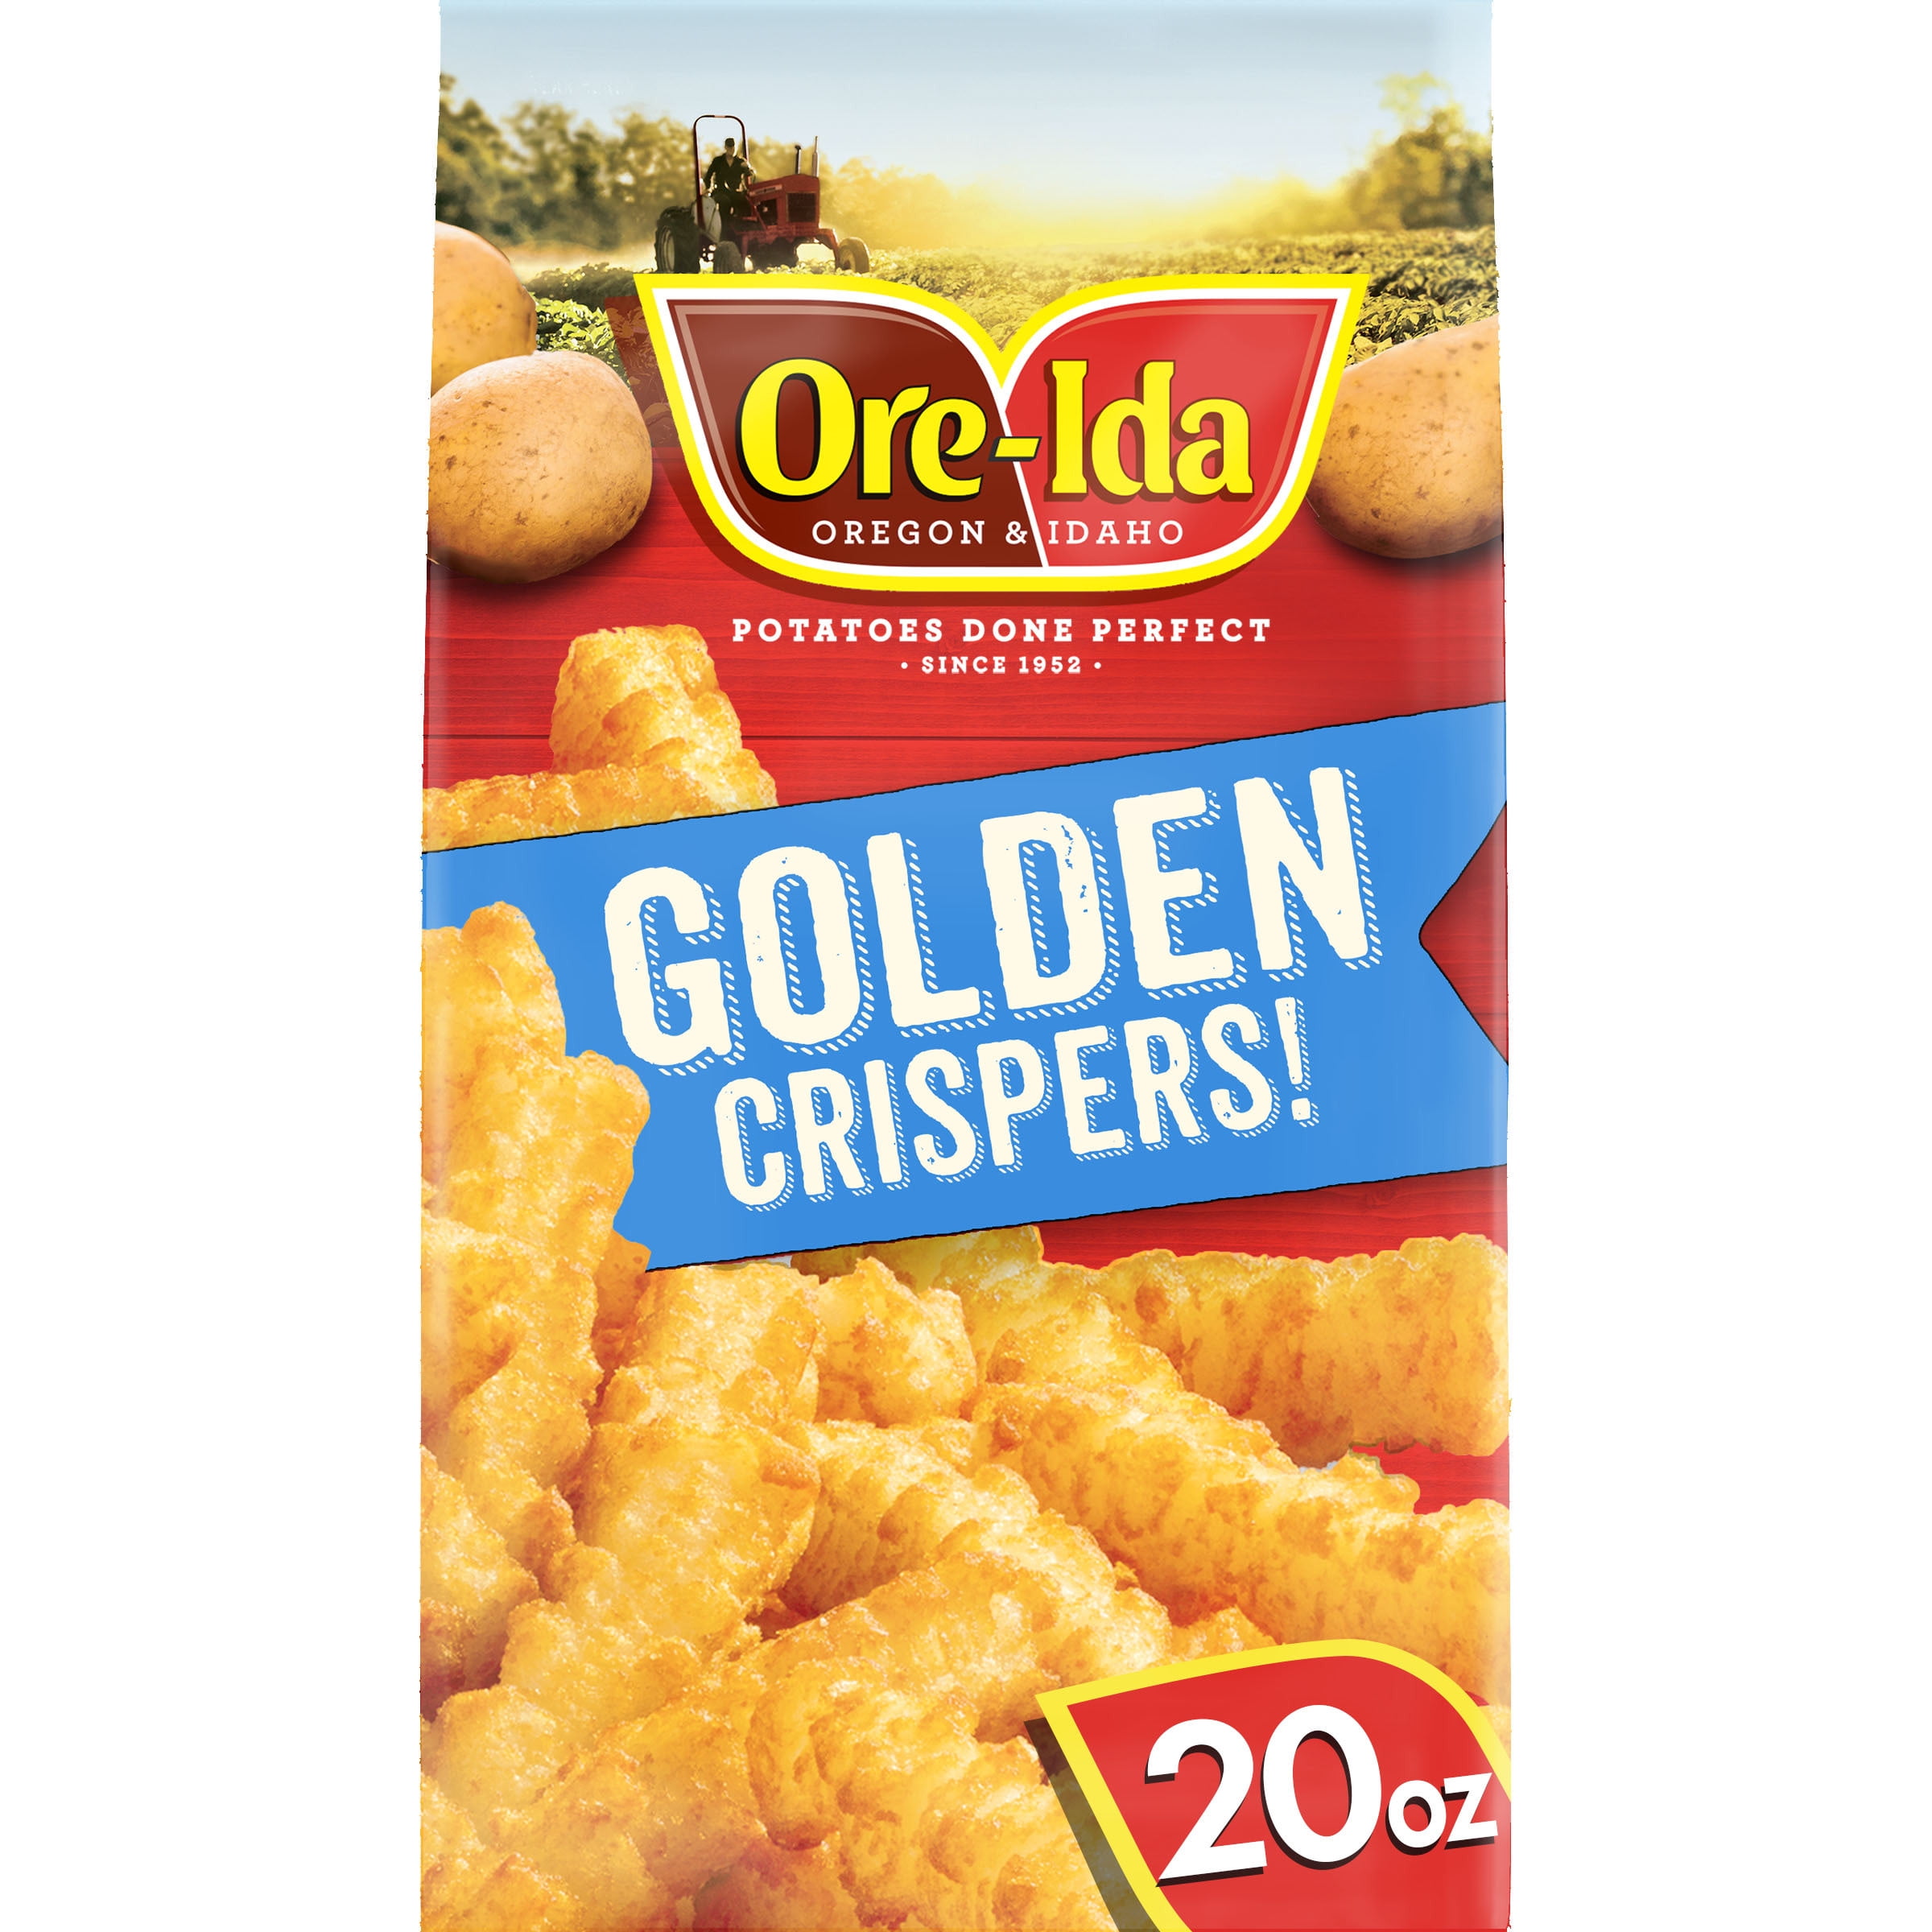 Ore-Ida Golden Crispers! Crispy French Fry Fried Frozen Potatoes, 20 oz ...